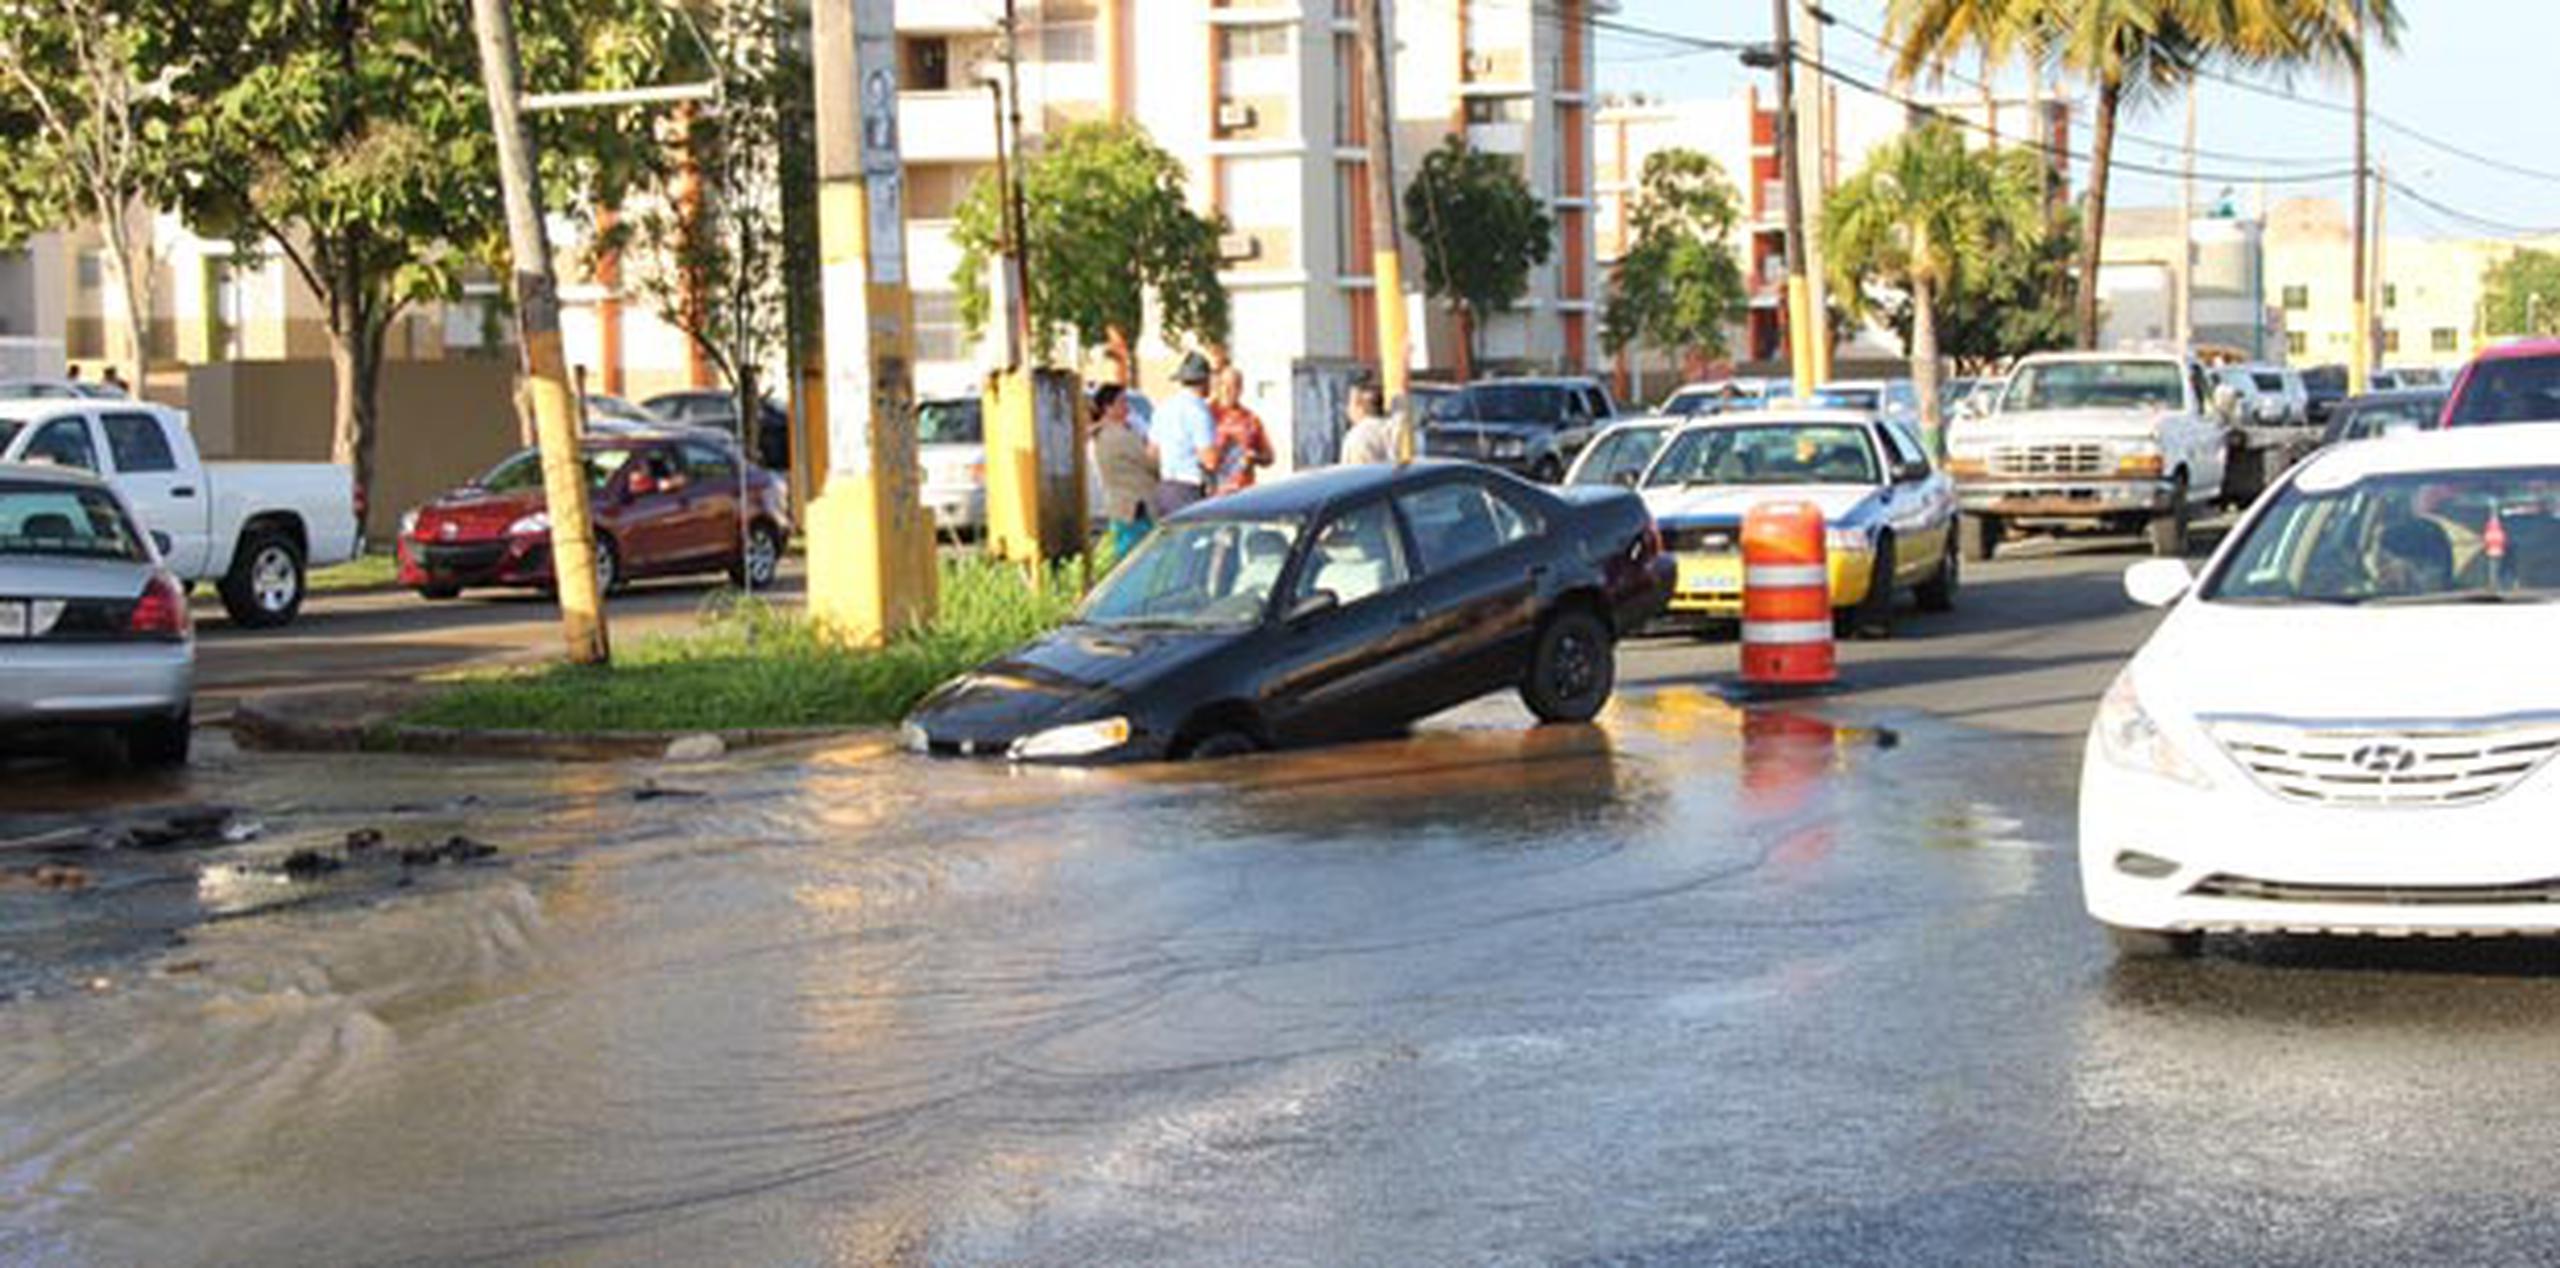 Por lo pronto, se informó que se ha afectado el tránsito en el área, donde se reporta mucha agua que brota del hueco. (alex.figueroa@gfrmedia.com)